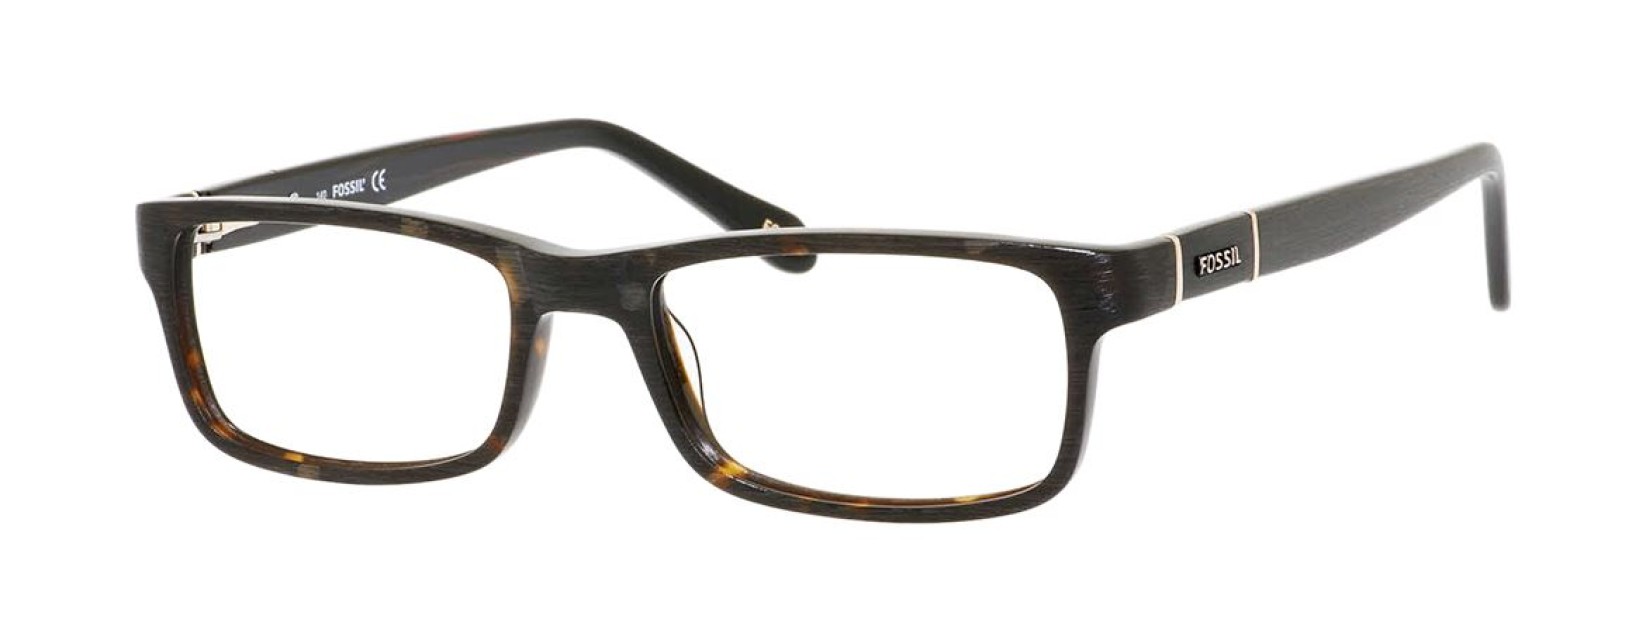 Fossil Archer Rectangular Eyeglasses - Stylish Frames for Men